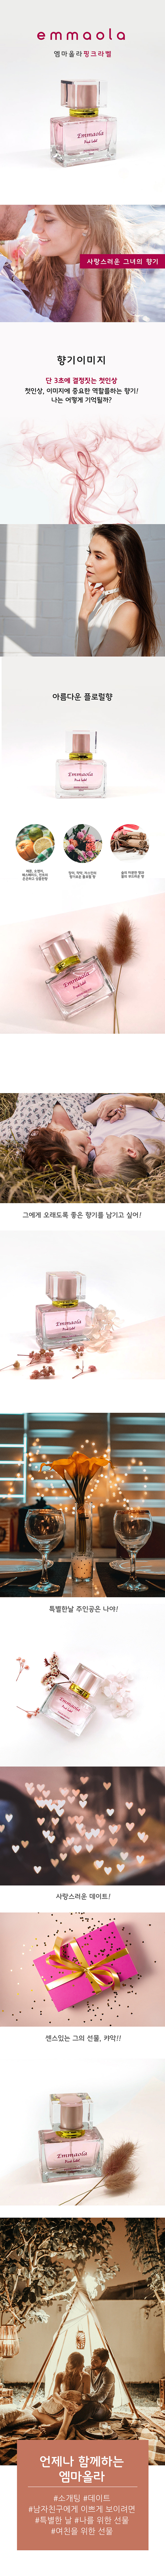 [페로몬 향수] 엠마올라 페로몬 향수 핑크 30ml(Emmaola Pink Label Pheromone 30ml)